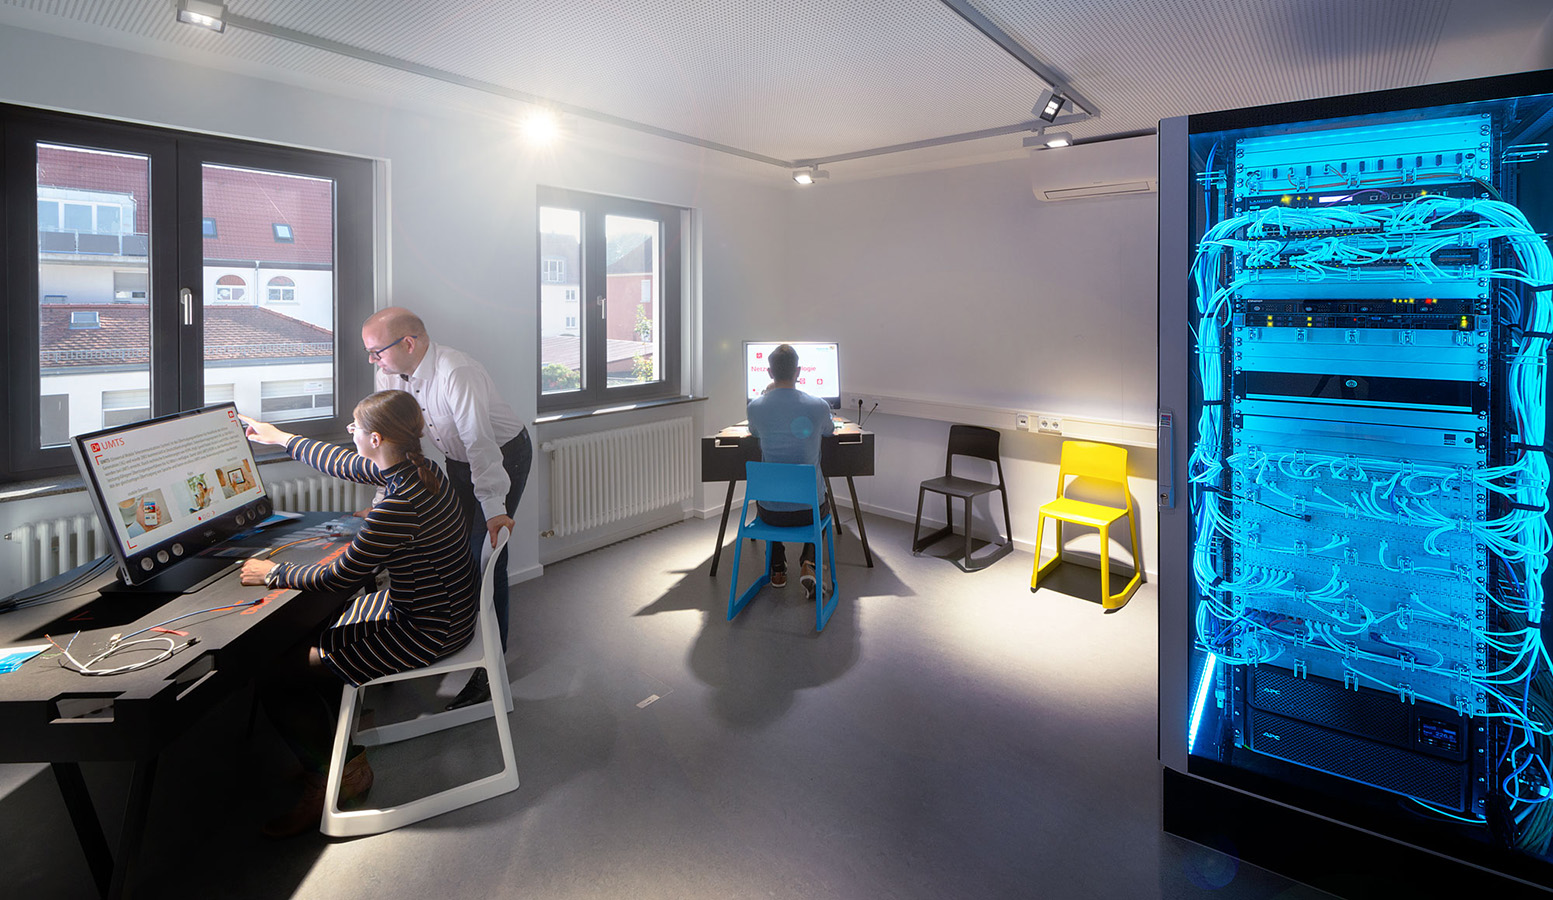 Am linken Bildrand ist ein Computerarbeitsplatz mit zwei Bildschirmen abgebildet an dem zwei Personen arbeiten. In der Mitte steht ein weiterer Computerarbeitsplatz an dem eine Person arbeitet. Rechts im Bild steht ein blau beleuchteter Serverschrank.